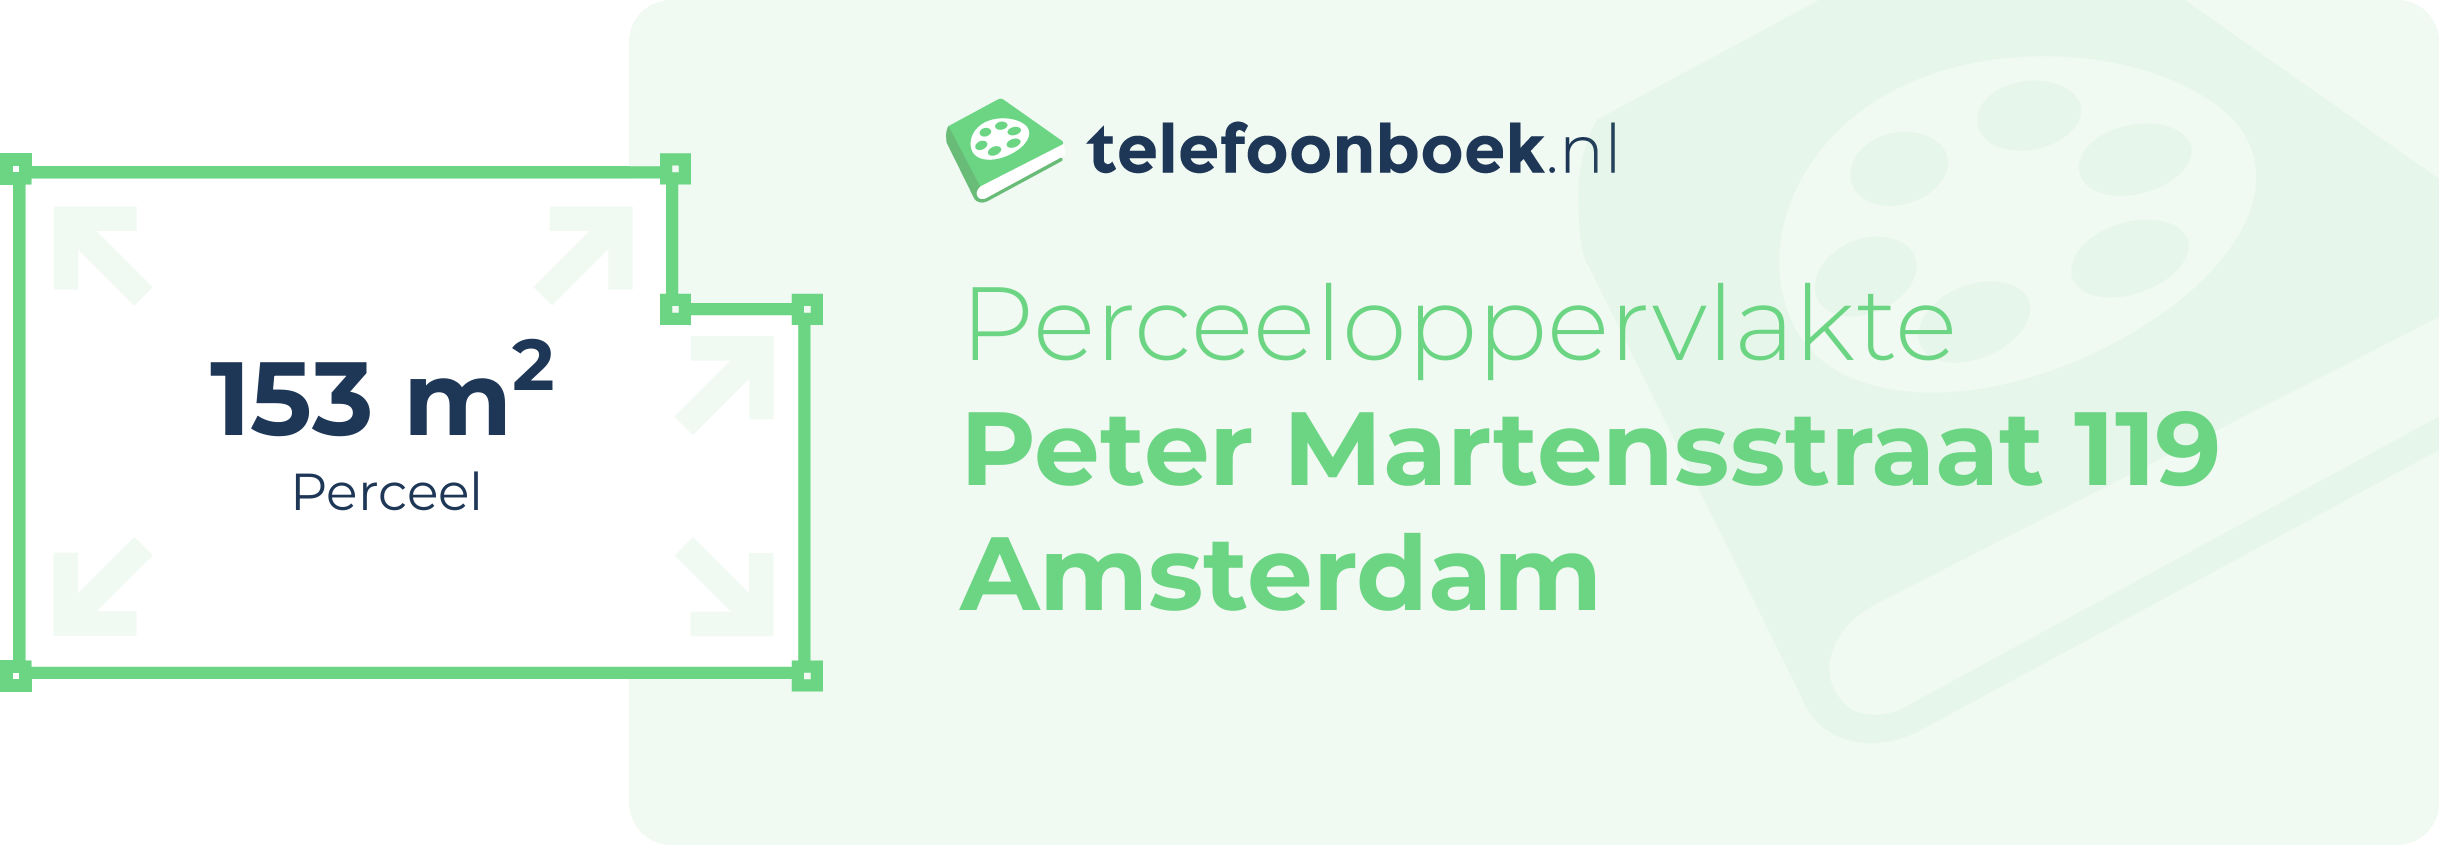 Perceeloppervlakte Peter Martensstraat 119 Amsterdam